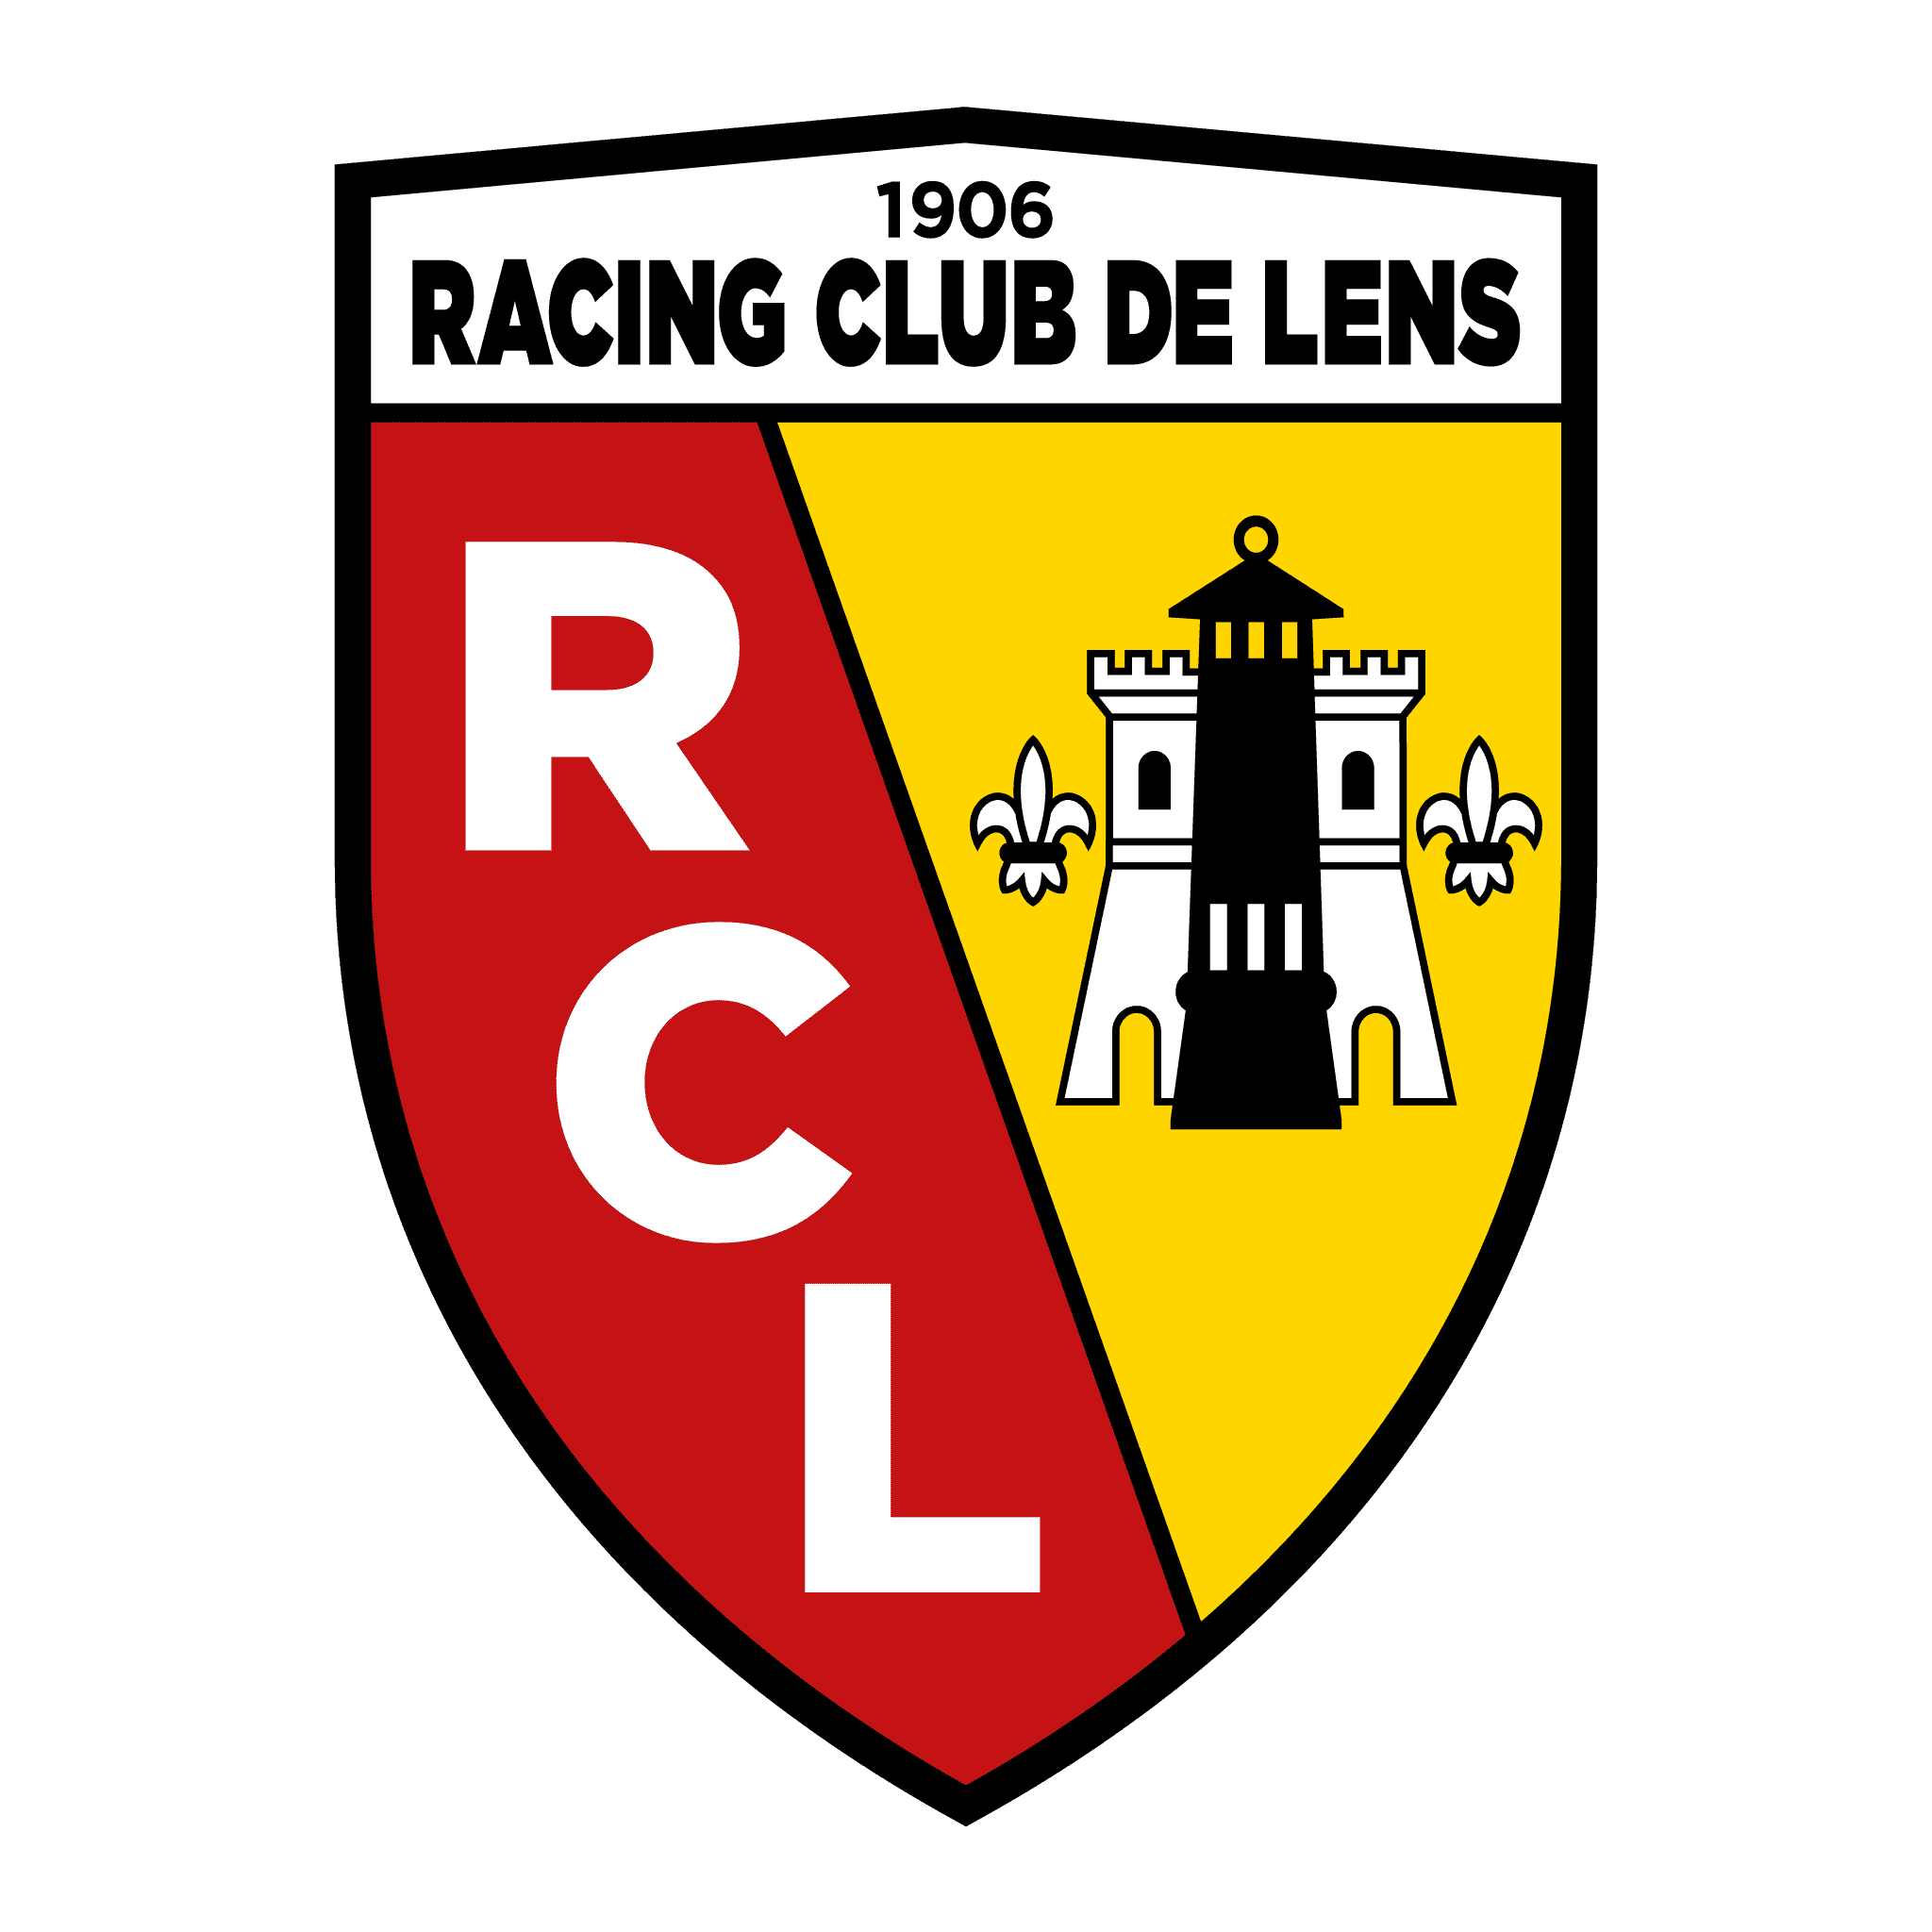 brasao do racing club de lens